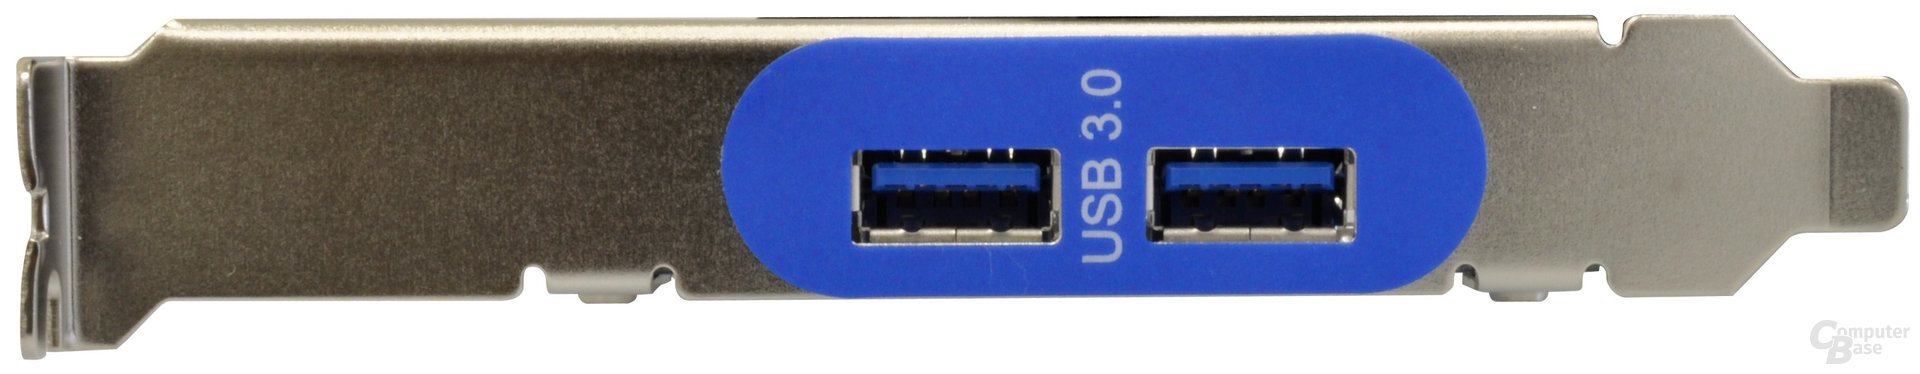 Gigabyte GA-USB 3.0